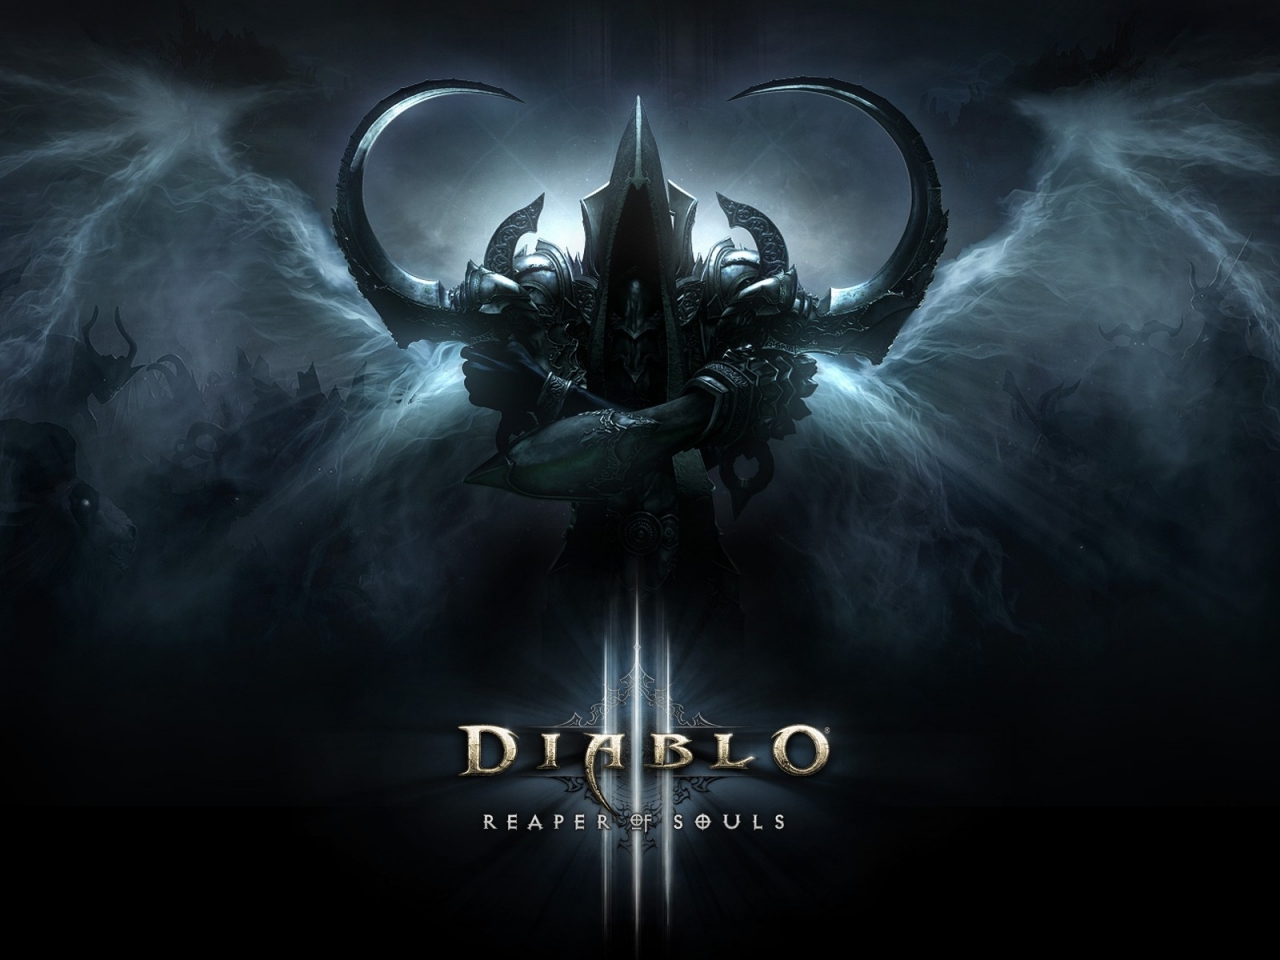 Reaper of Souls Diablo III for 1280 x 960 resolution